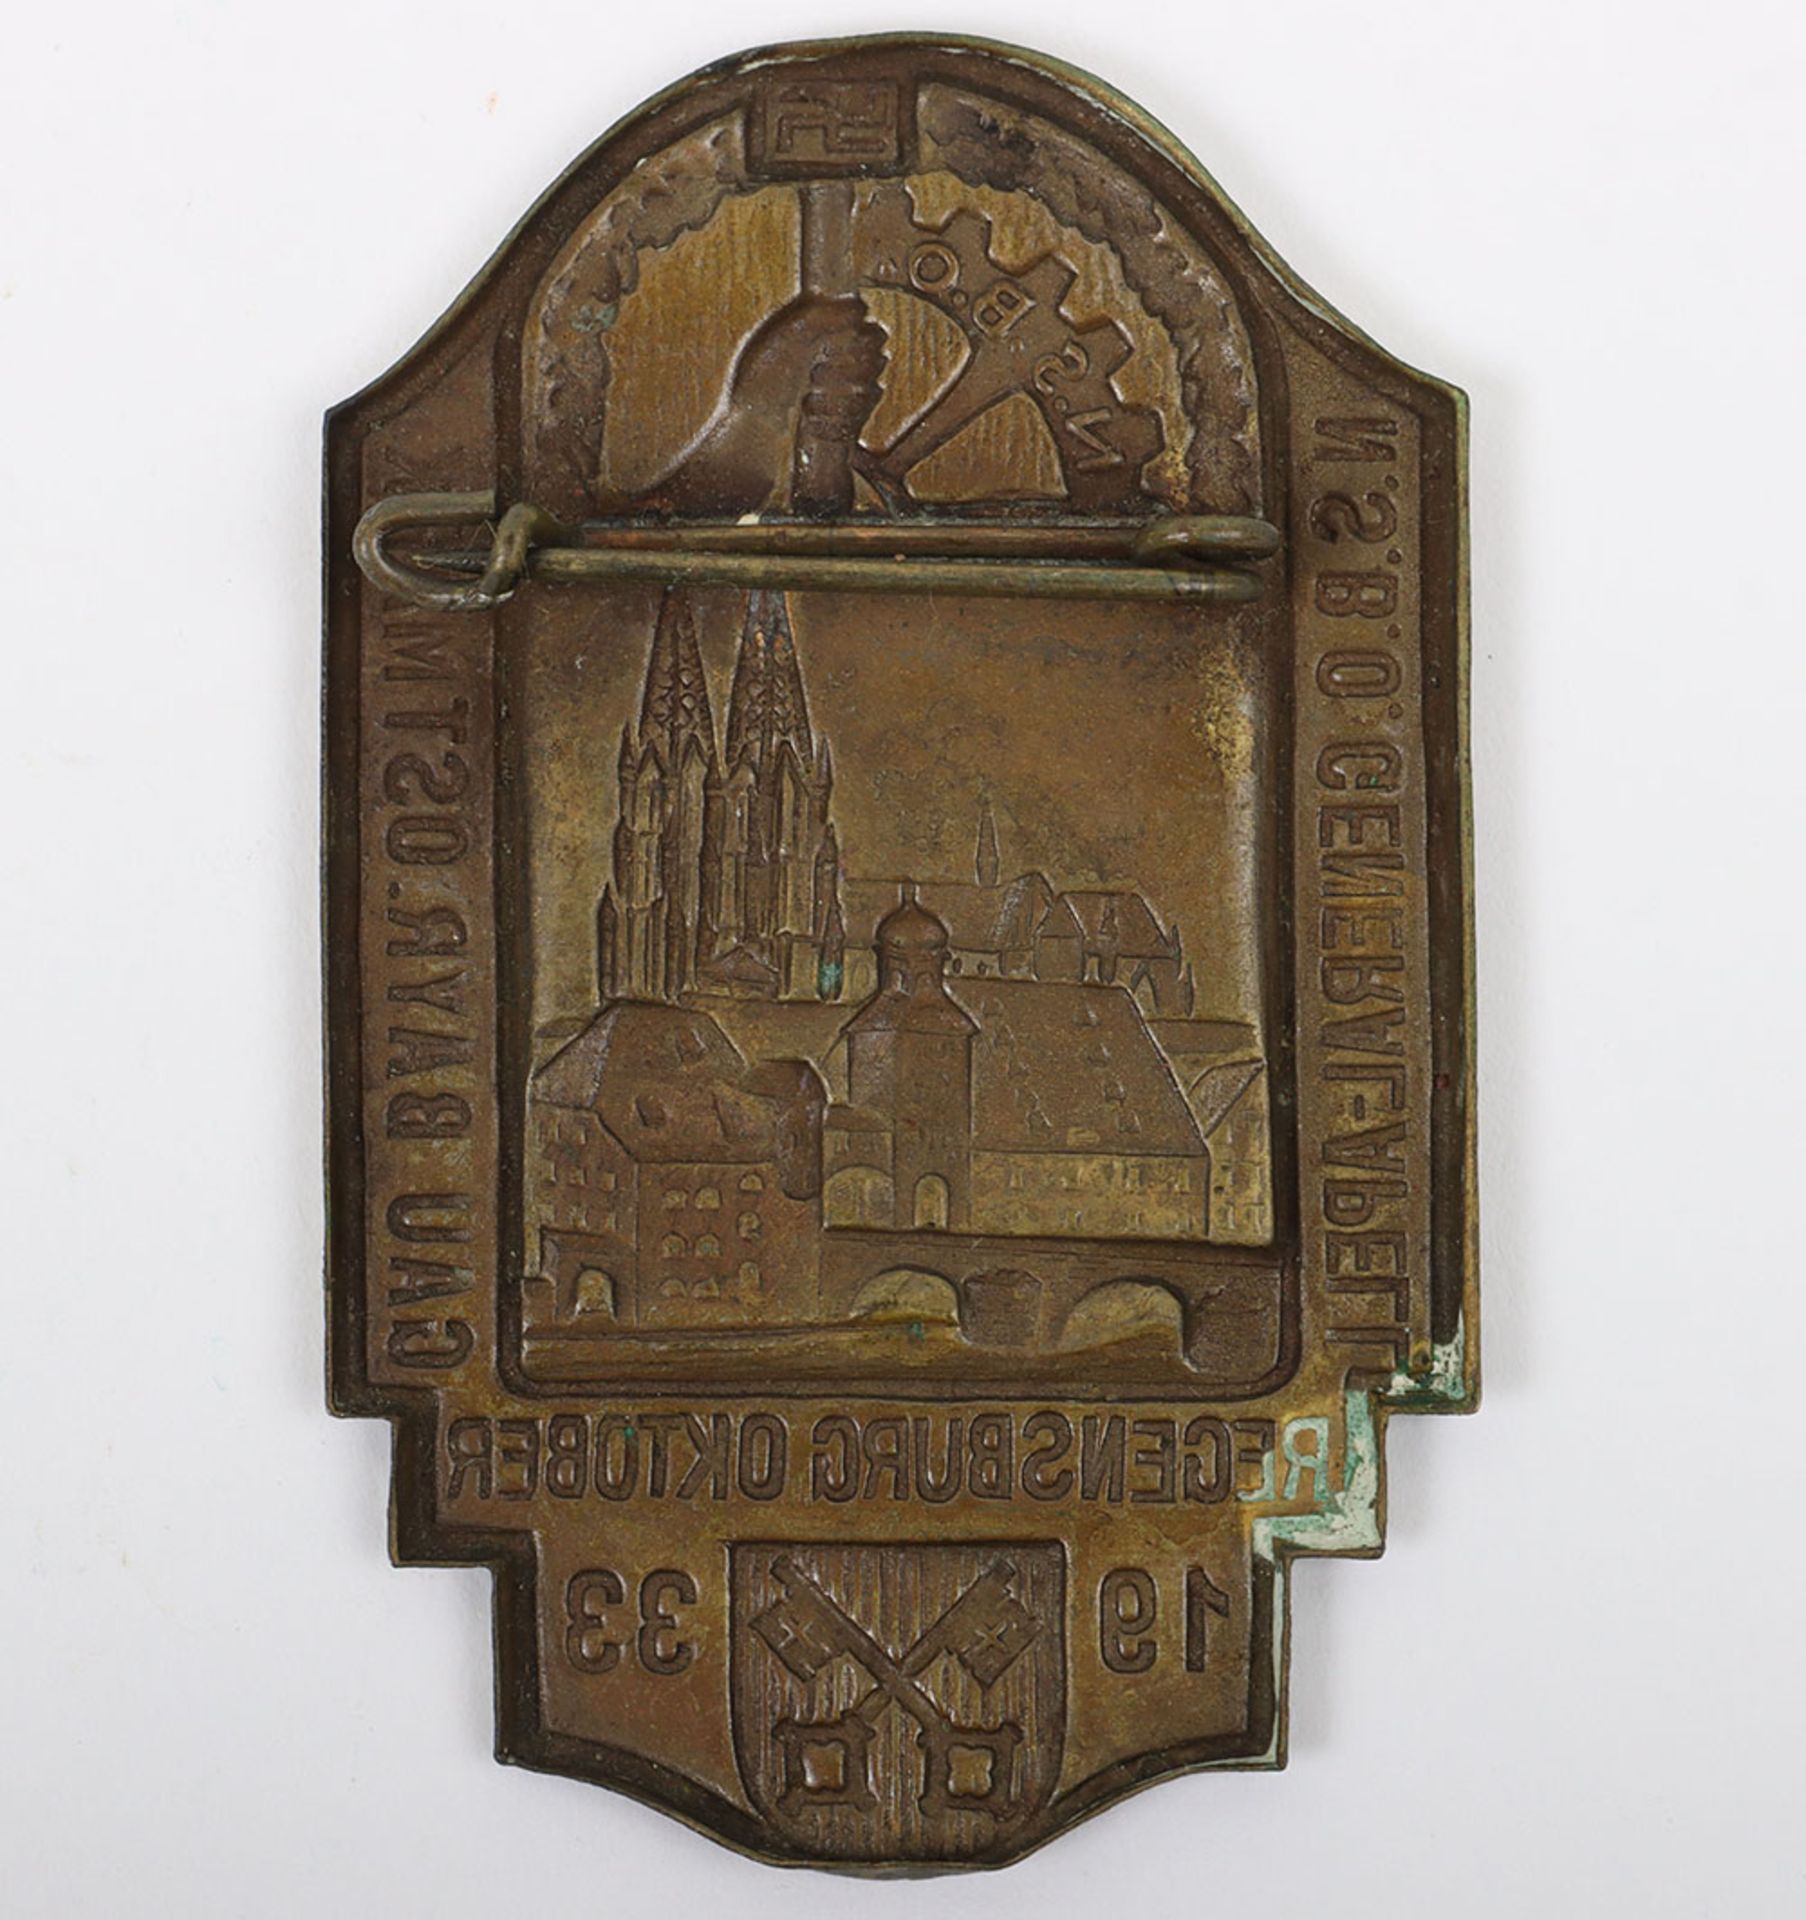 Third Reich N.S.B.O Regensburg Gau Ostmark Day Badge - Image 3 of 3